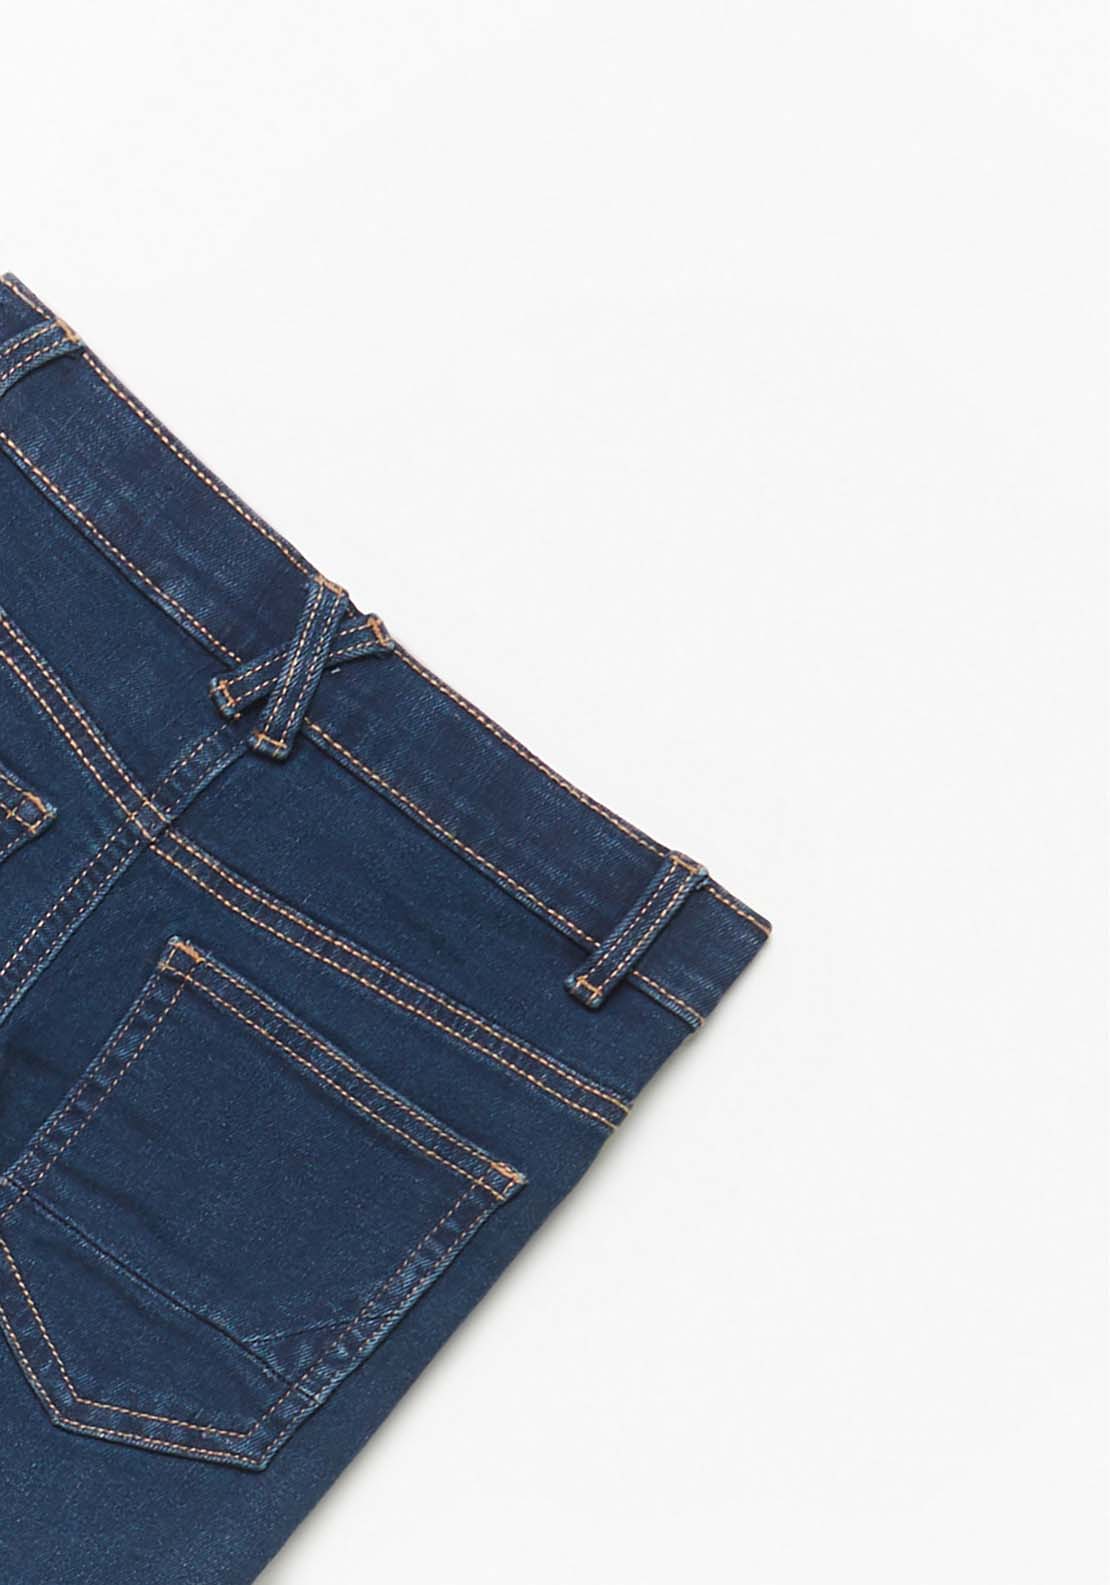 Sfera Denim Jeans - Dark Blue 3 Shaws Department Stores